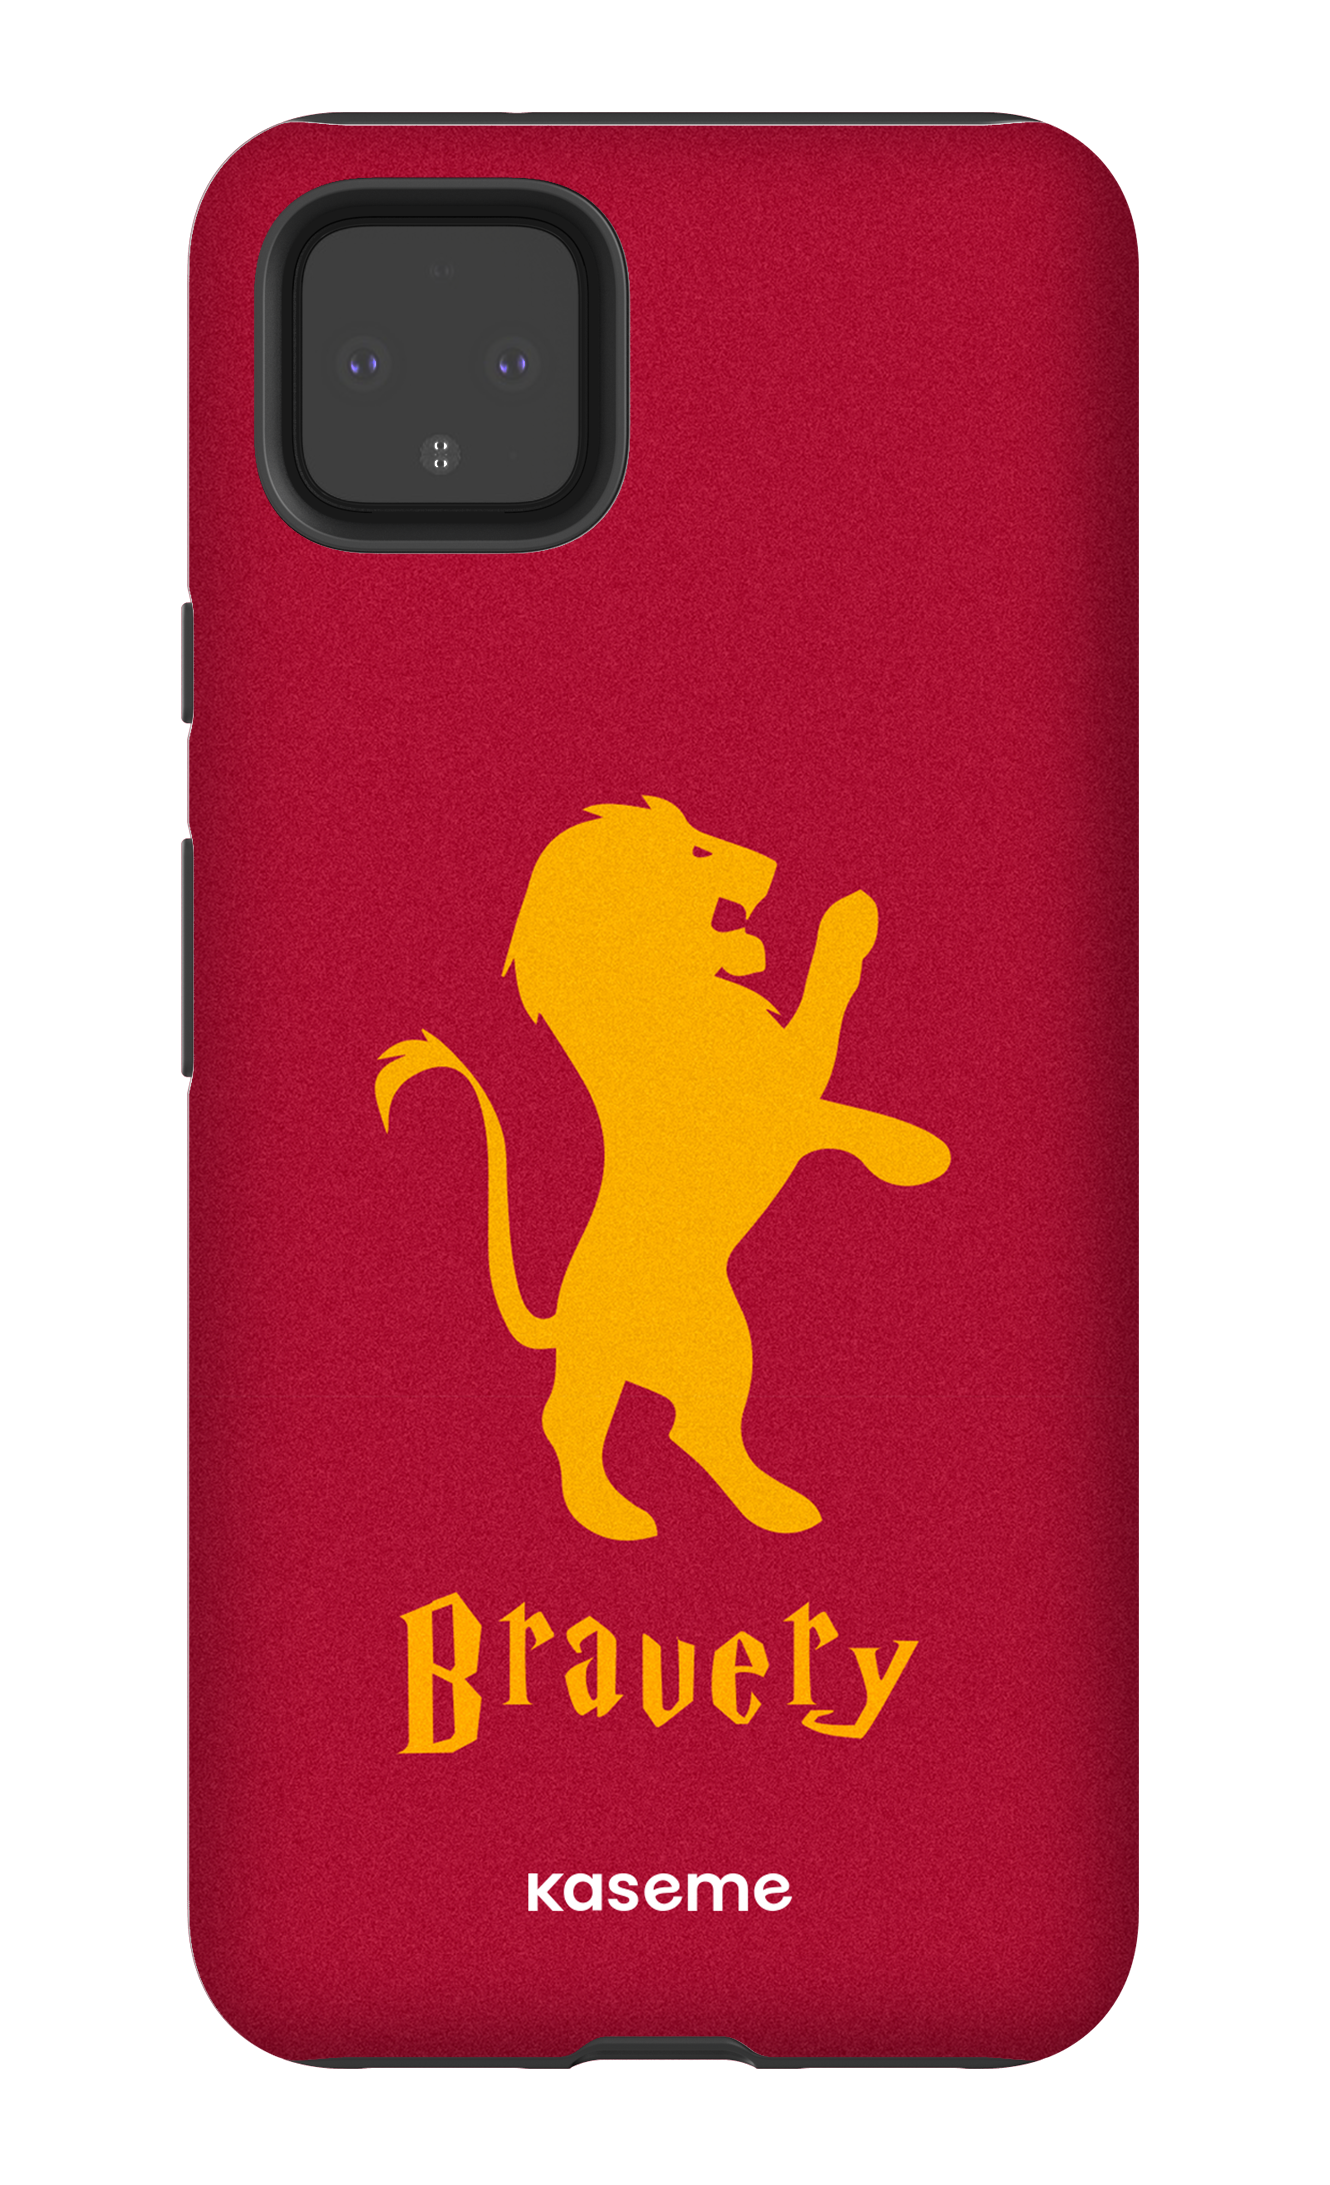 Bravery - Google Pixel 4 XL